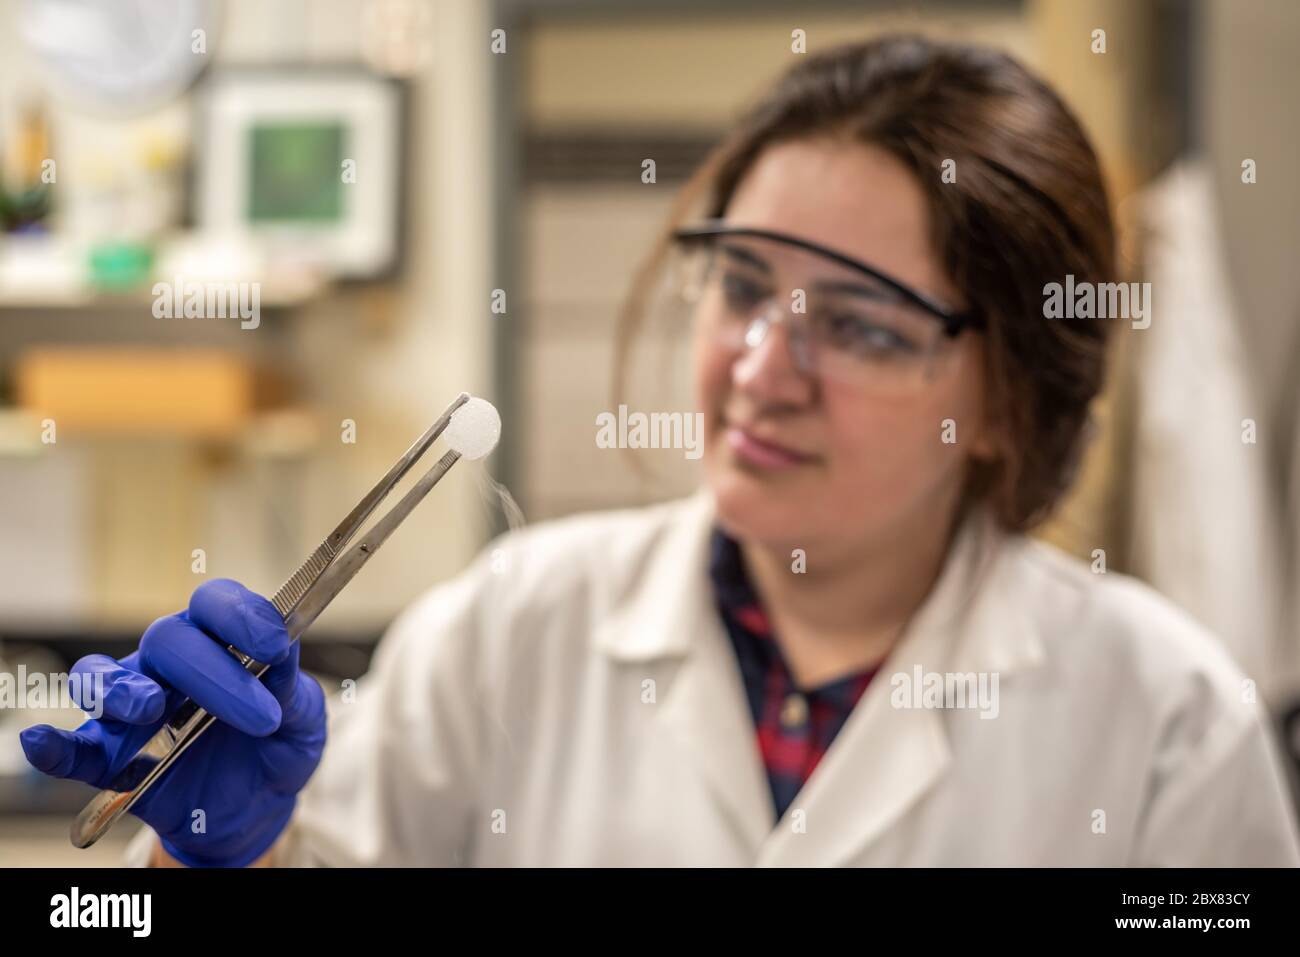 Chercheur travaillant en laboratoire de chimie avec des produits chimiques Banque D'Images